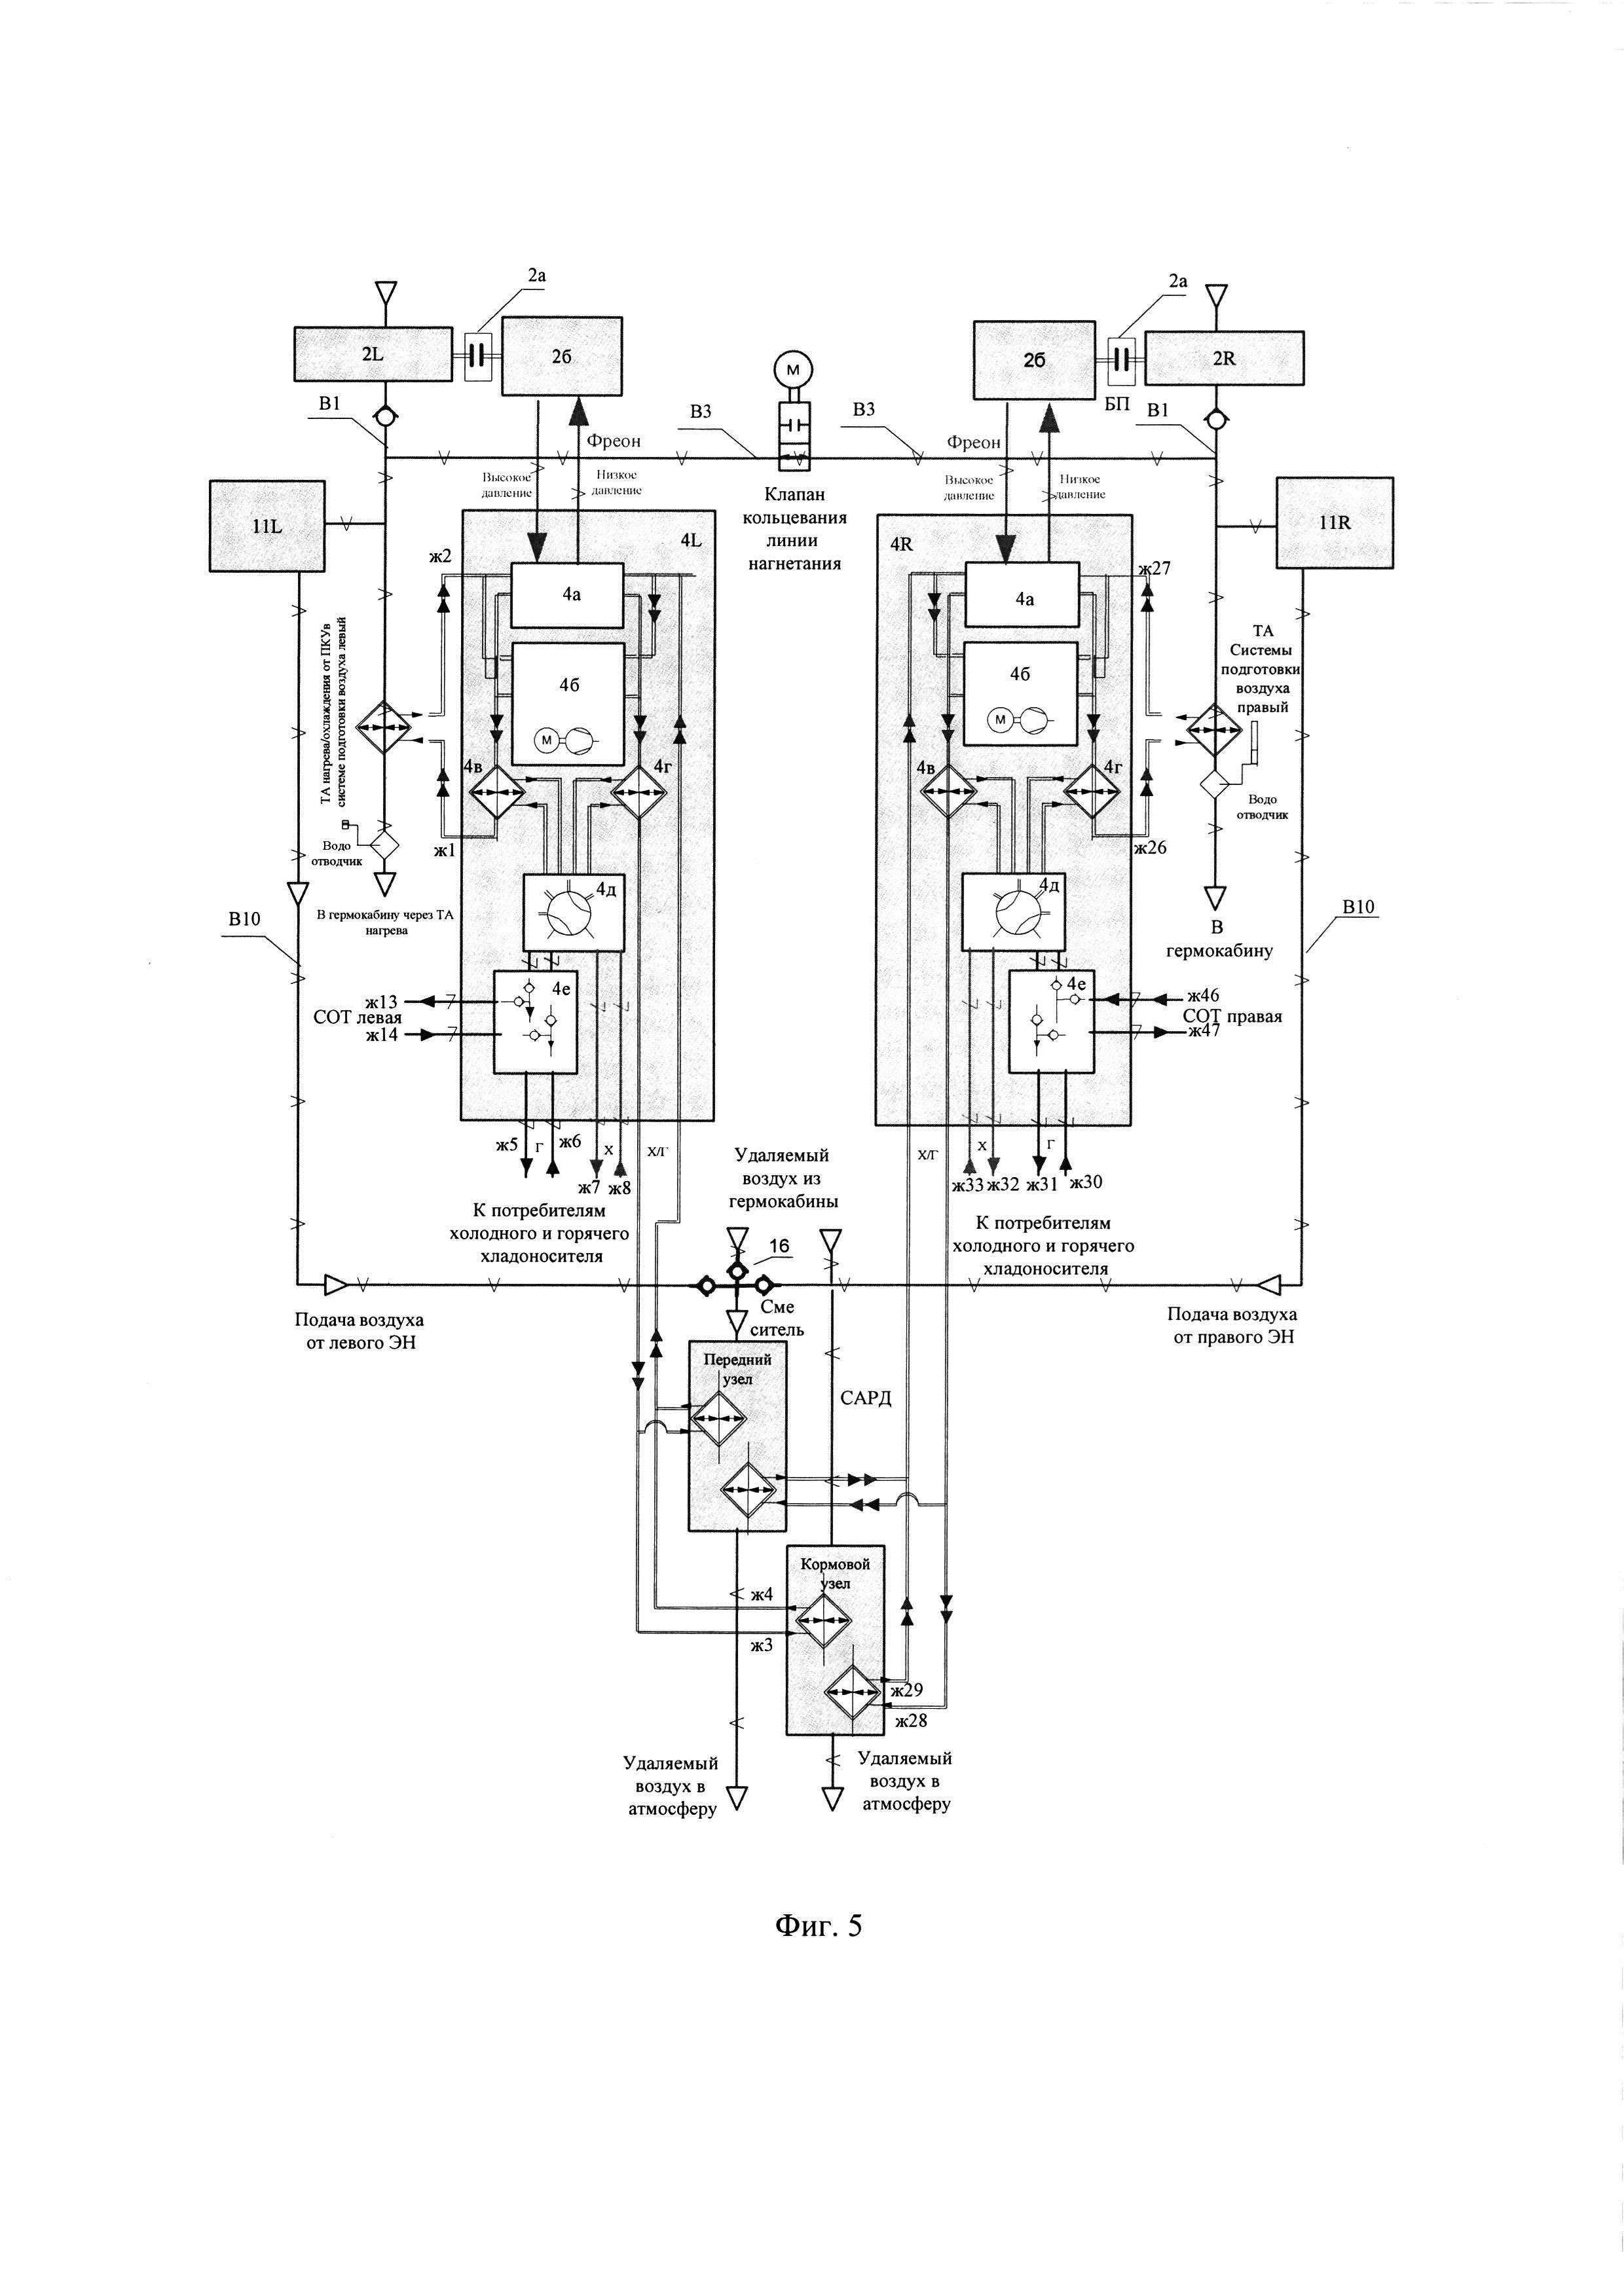 Система кондиционирования воздуха летательного аппарата на основе электроприводных нагнетателей и реверсивных парокомпрессионных холодильных установок